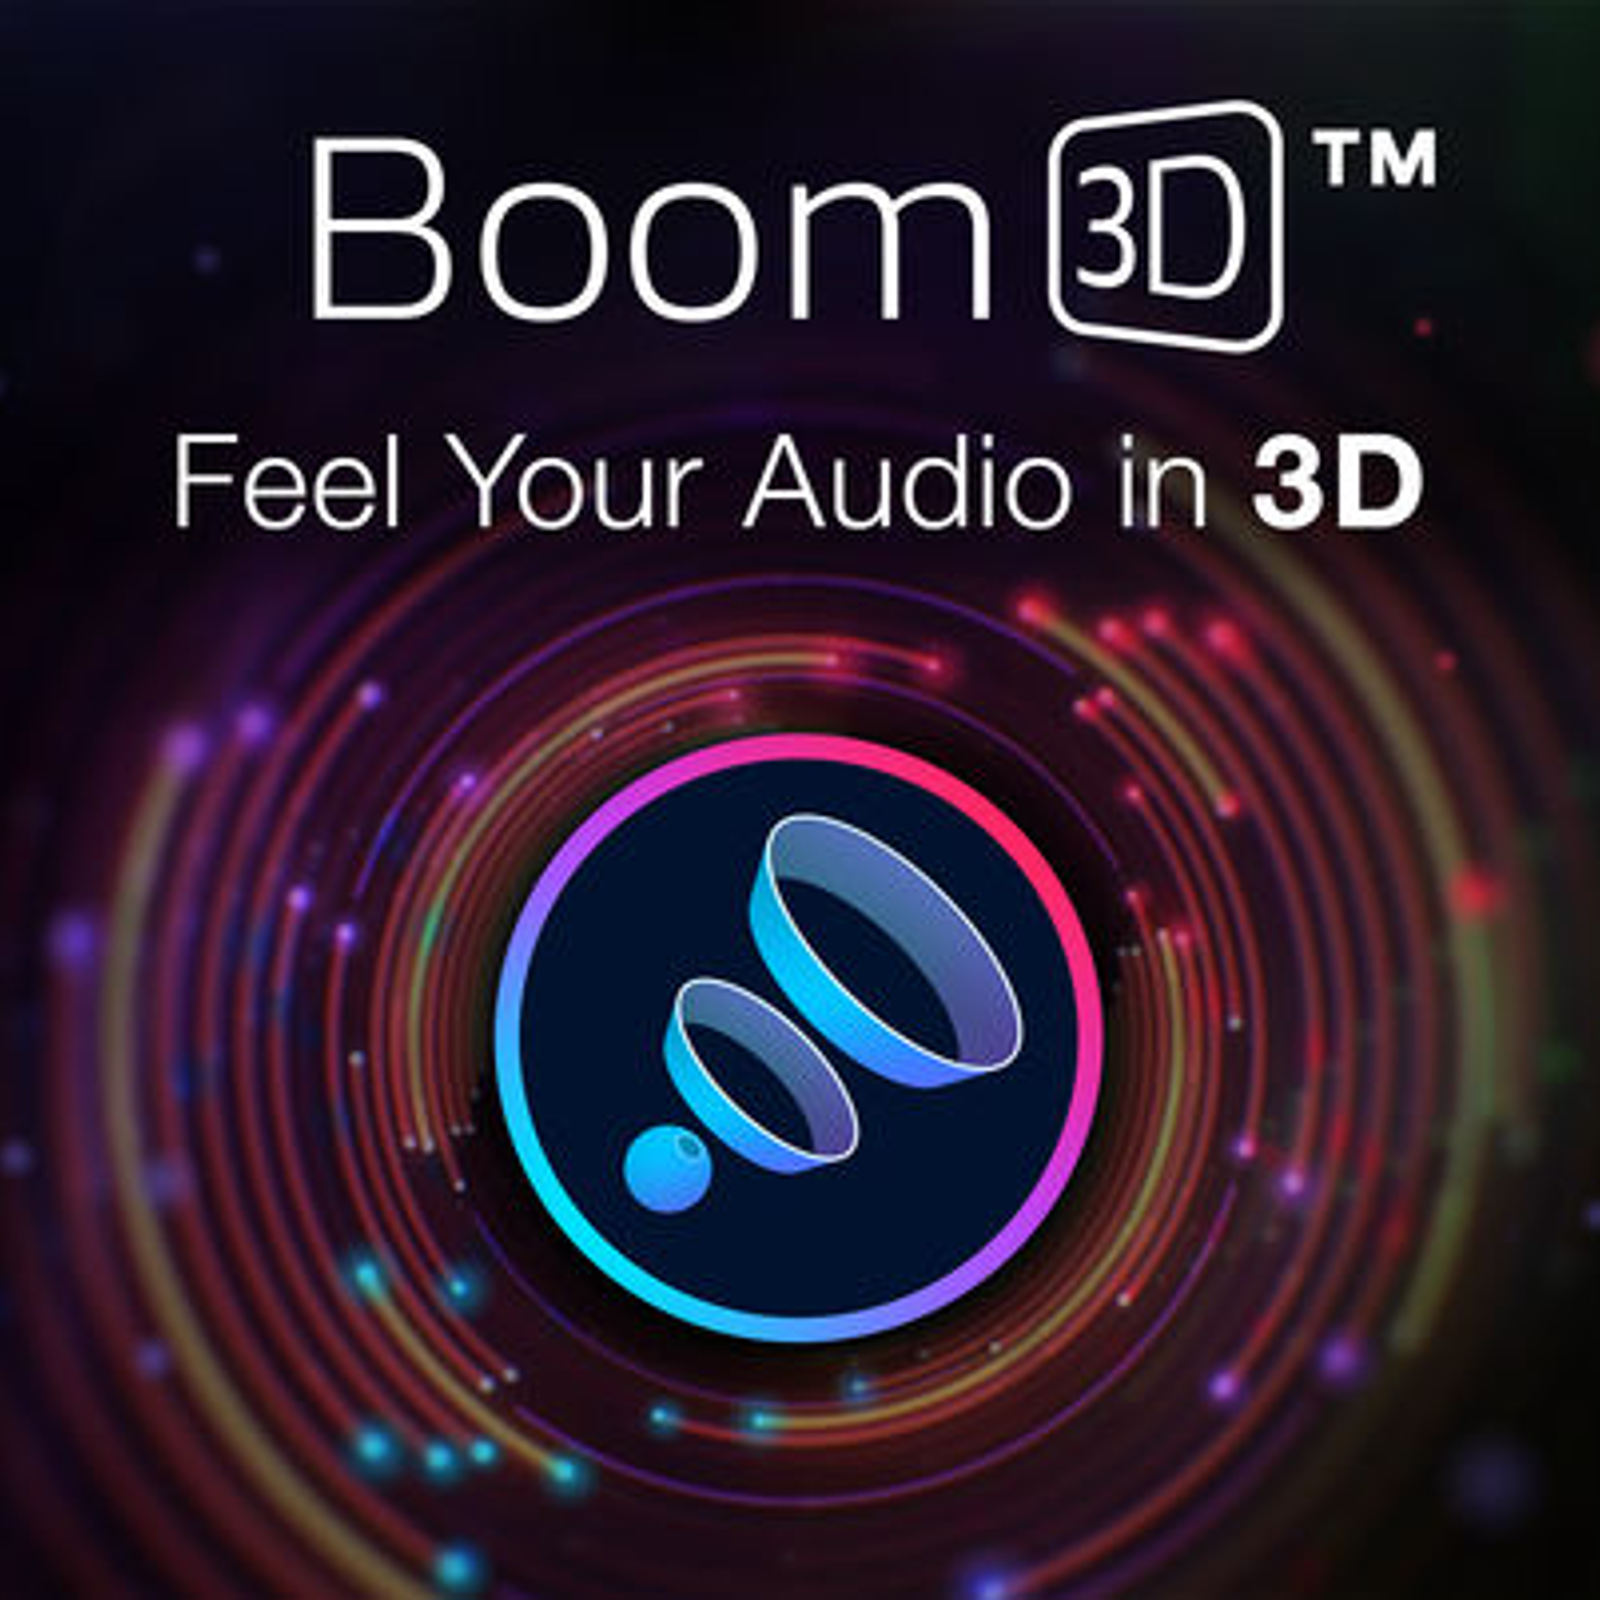 Buy Boom 3D 64 bit